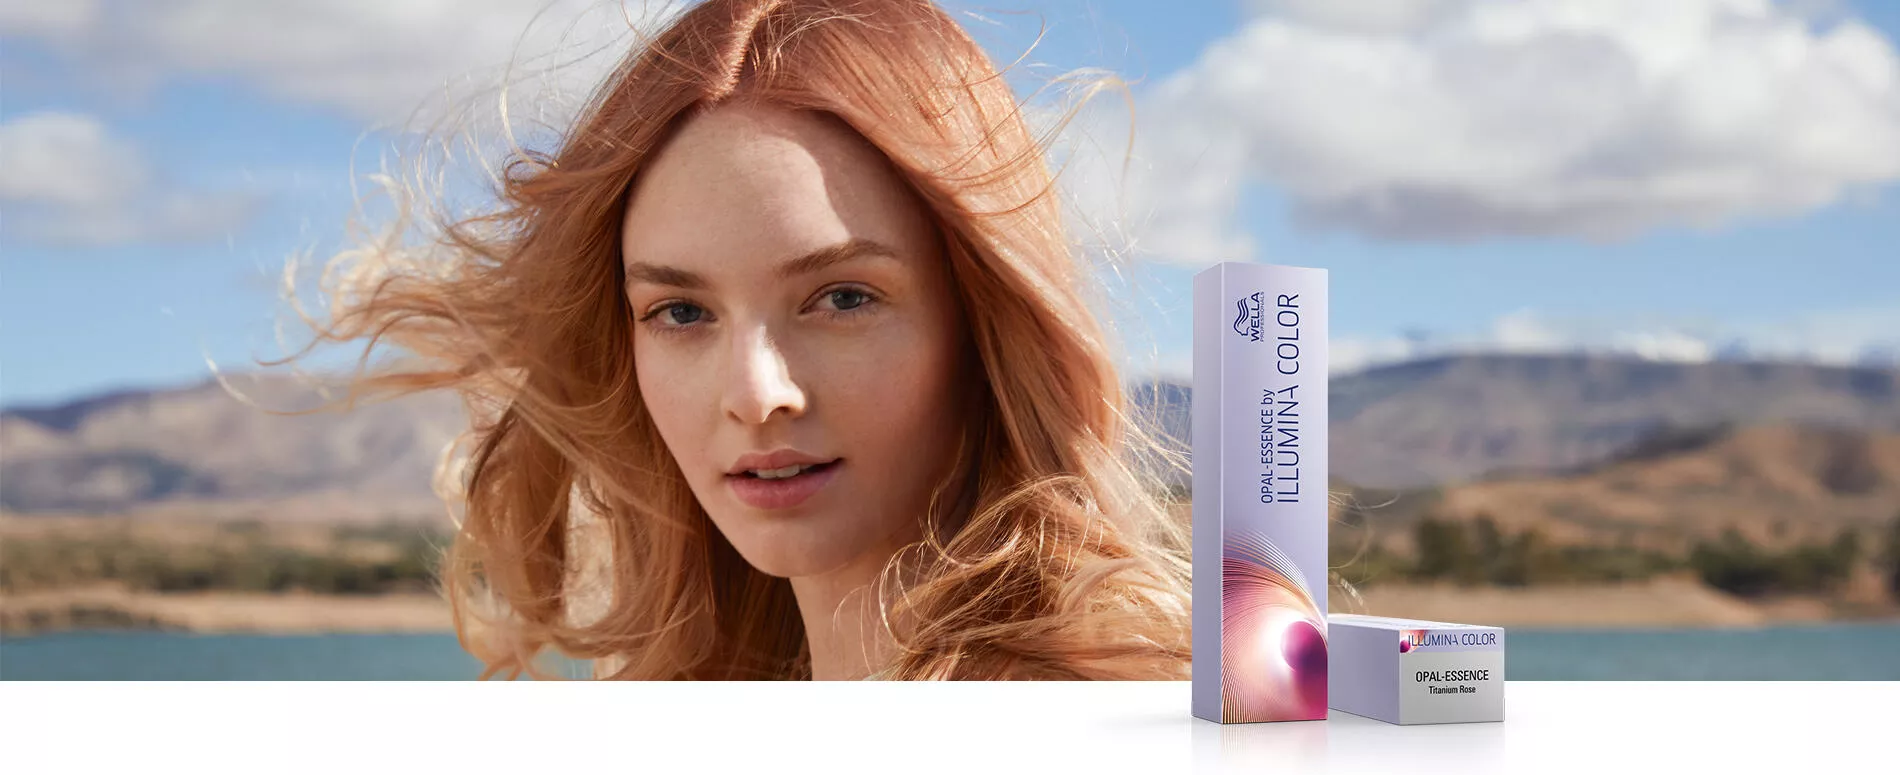 Γυναίκα με μαλλιά σε χρώμα Titanium Rose λαμβάνει περιποίηση με το Opal-Essence από την Illumina Color